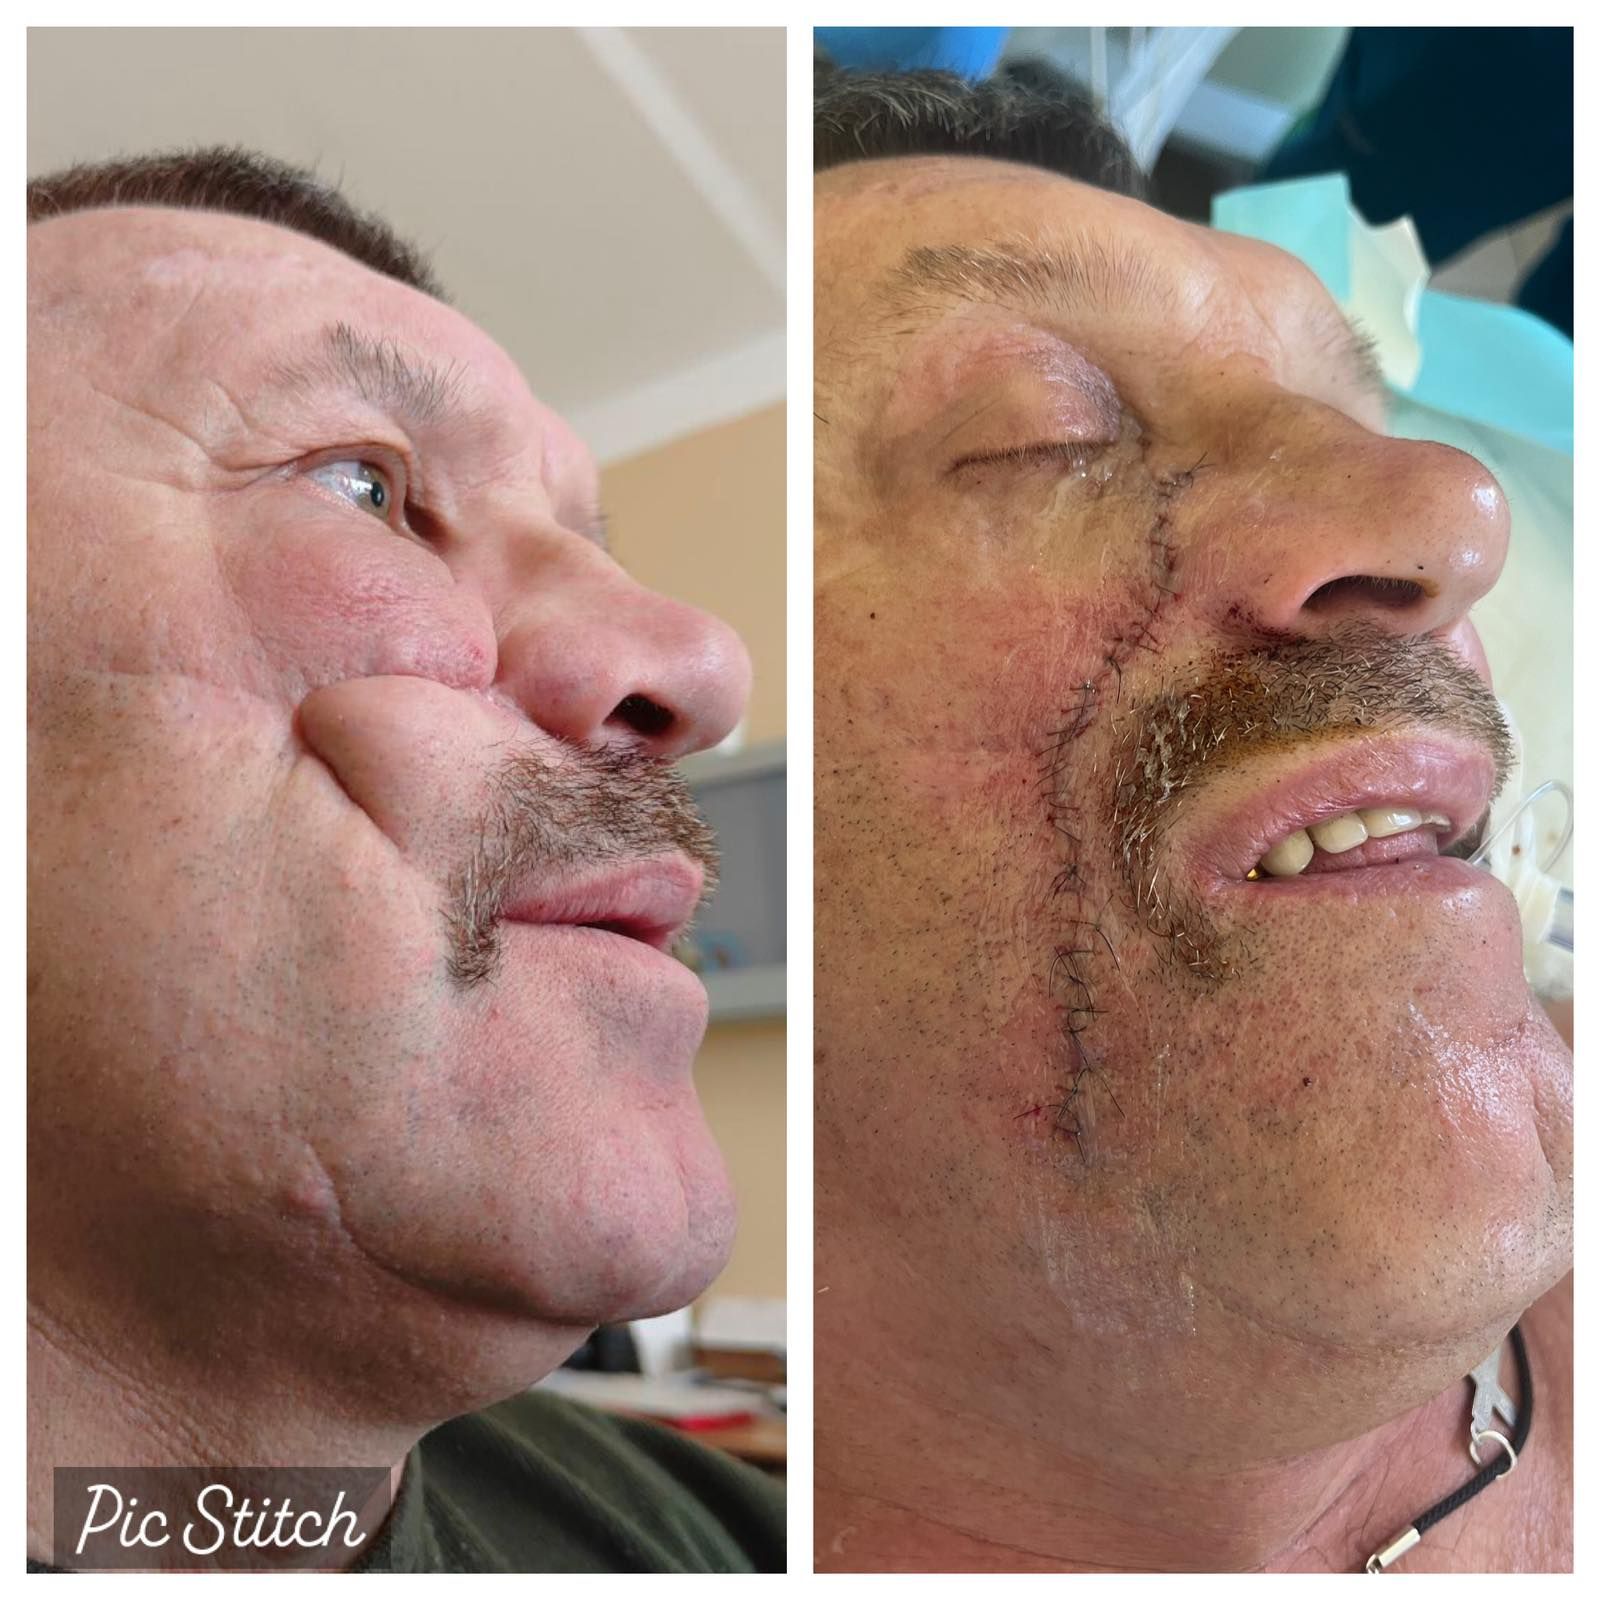 Обличчя пацієнта до і після операції xdideeieuidqrant